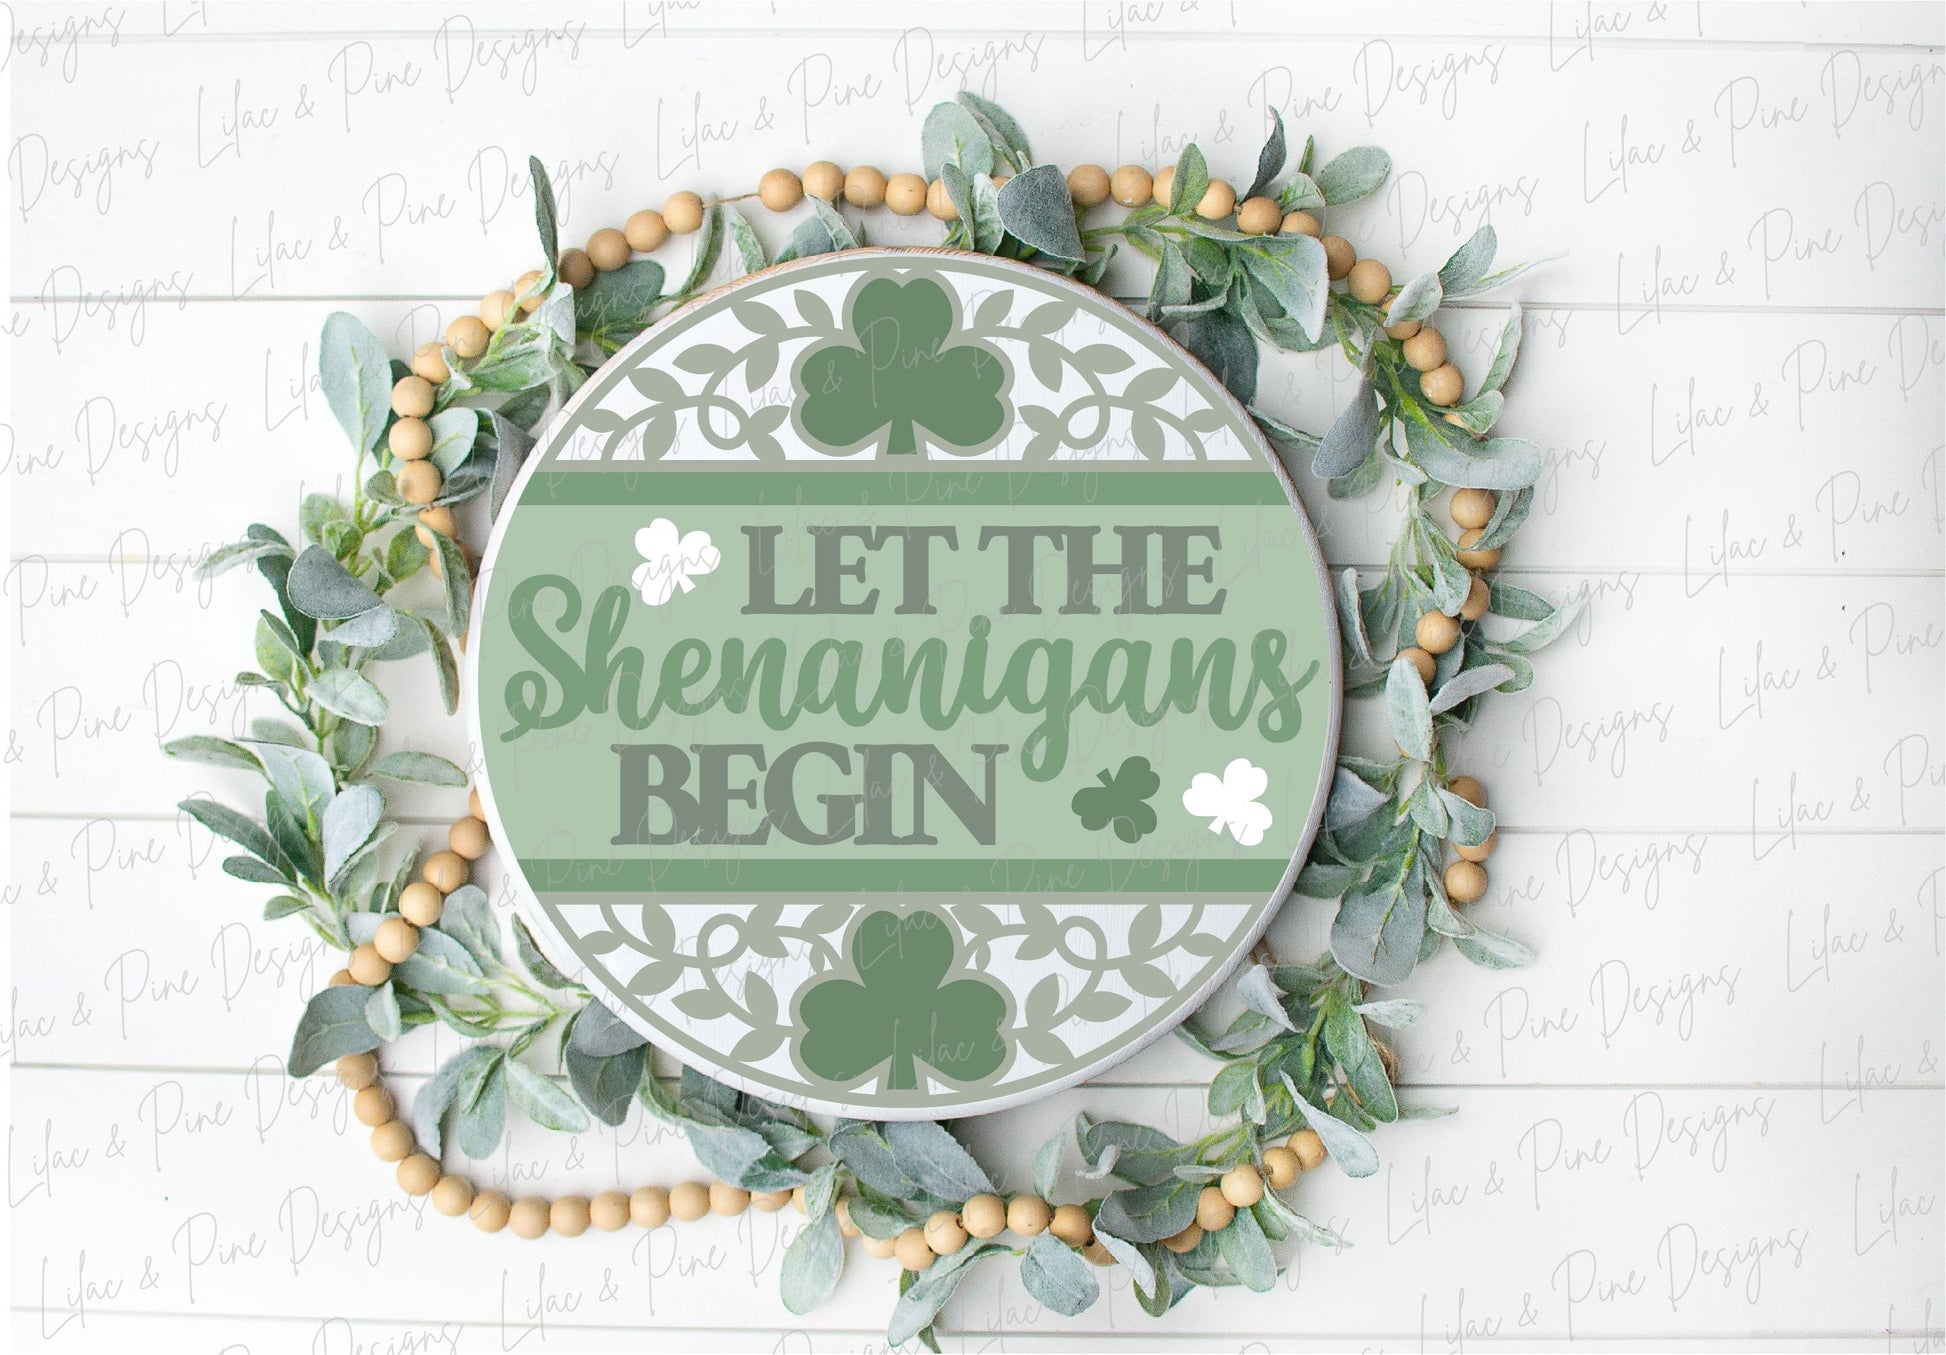 Let the Shenanigans begin sign, Shamrock door hanger SVG, St Patricks Day welcome sign, St Paddys day decor, Glowforge SVG, laser cut file